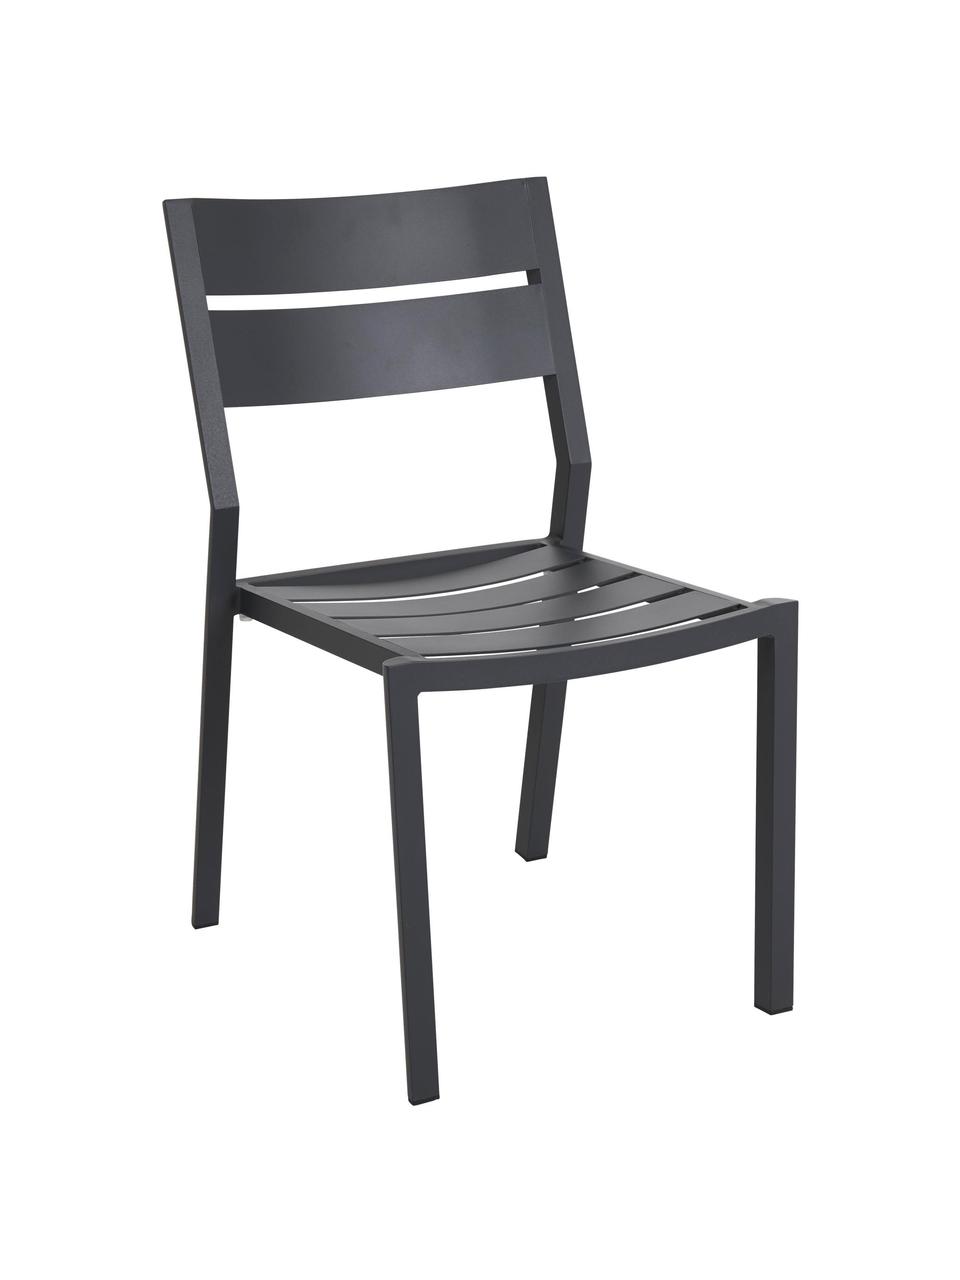 Krzesło ogrodowe Delia, Aluminium malowane proszkowo, Antracytowy, S 48 x G 55 cm